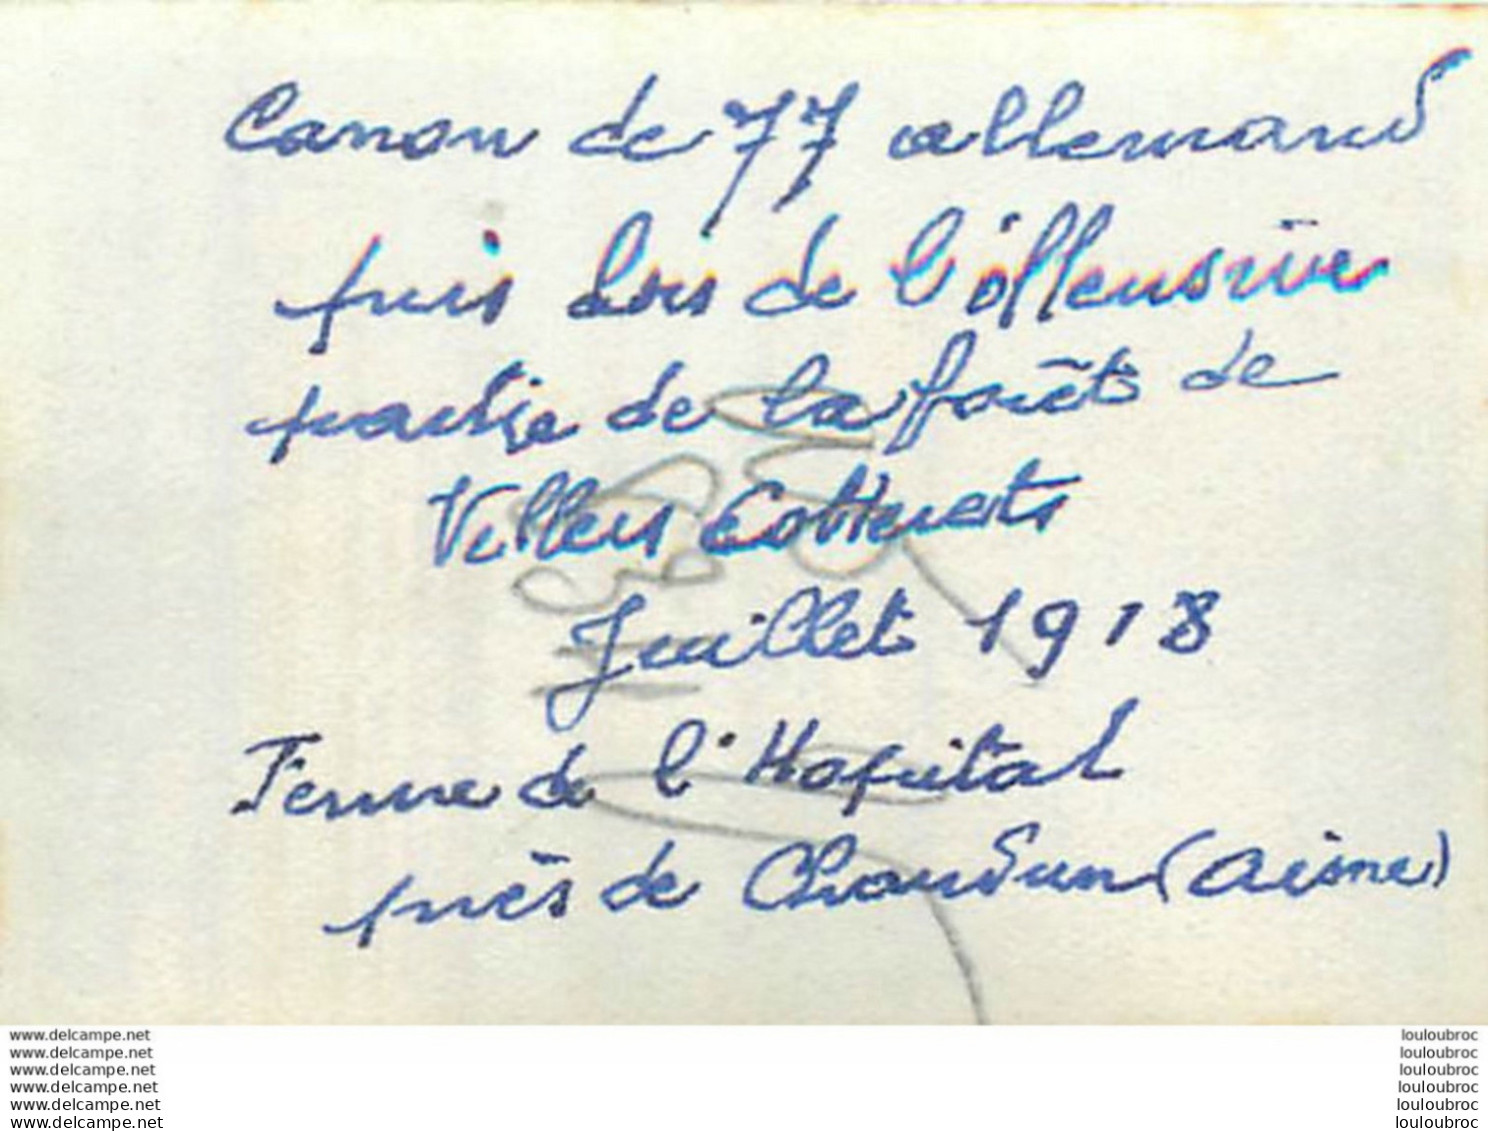 CANON DE 77 ALLEMAND PRIS SECTEUR FERME DE L'HOPITAL AISNE 07/1918   PHOTO ORIGINALE  6.50 X 5 CM Ref1 - Guerre, Militaire